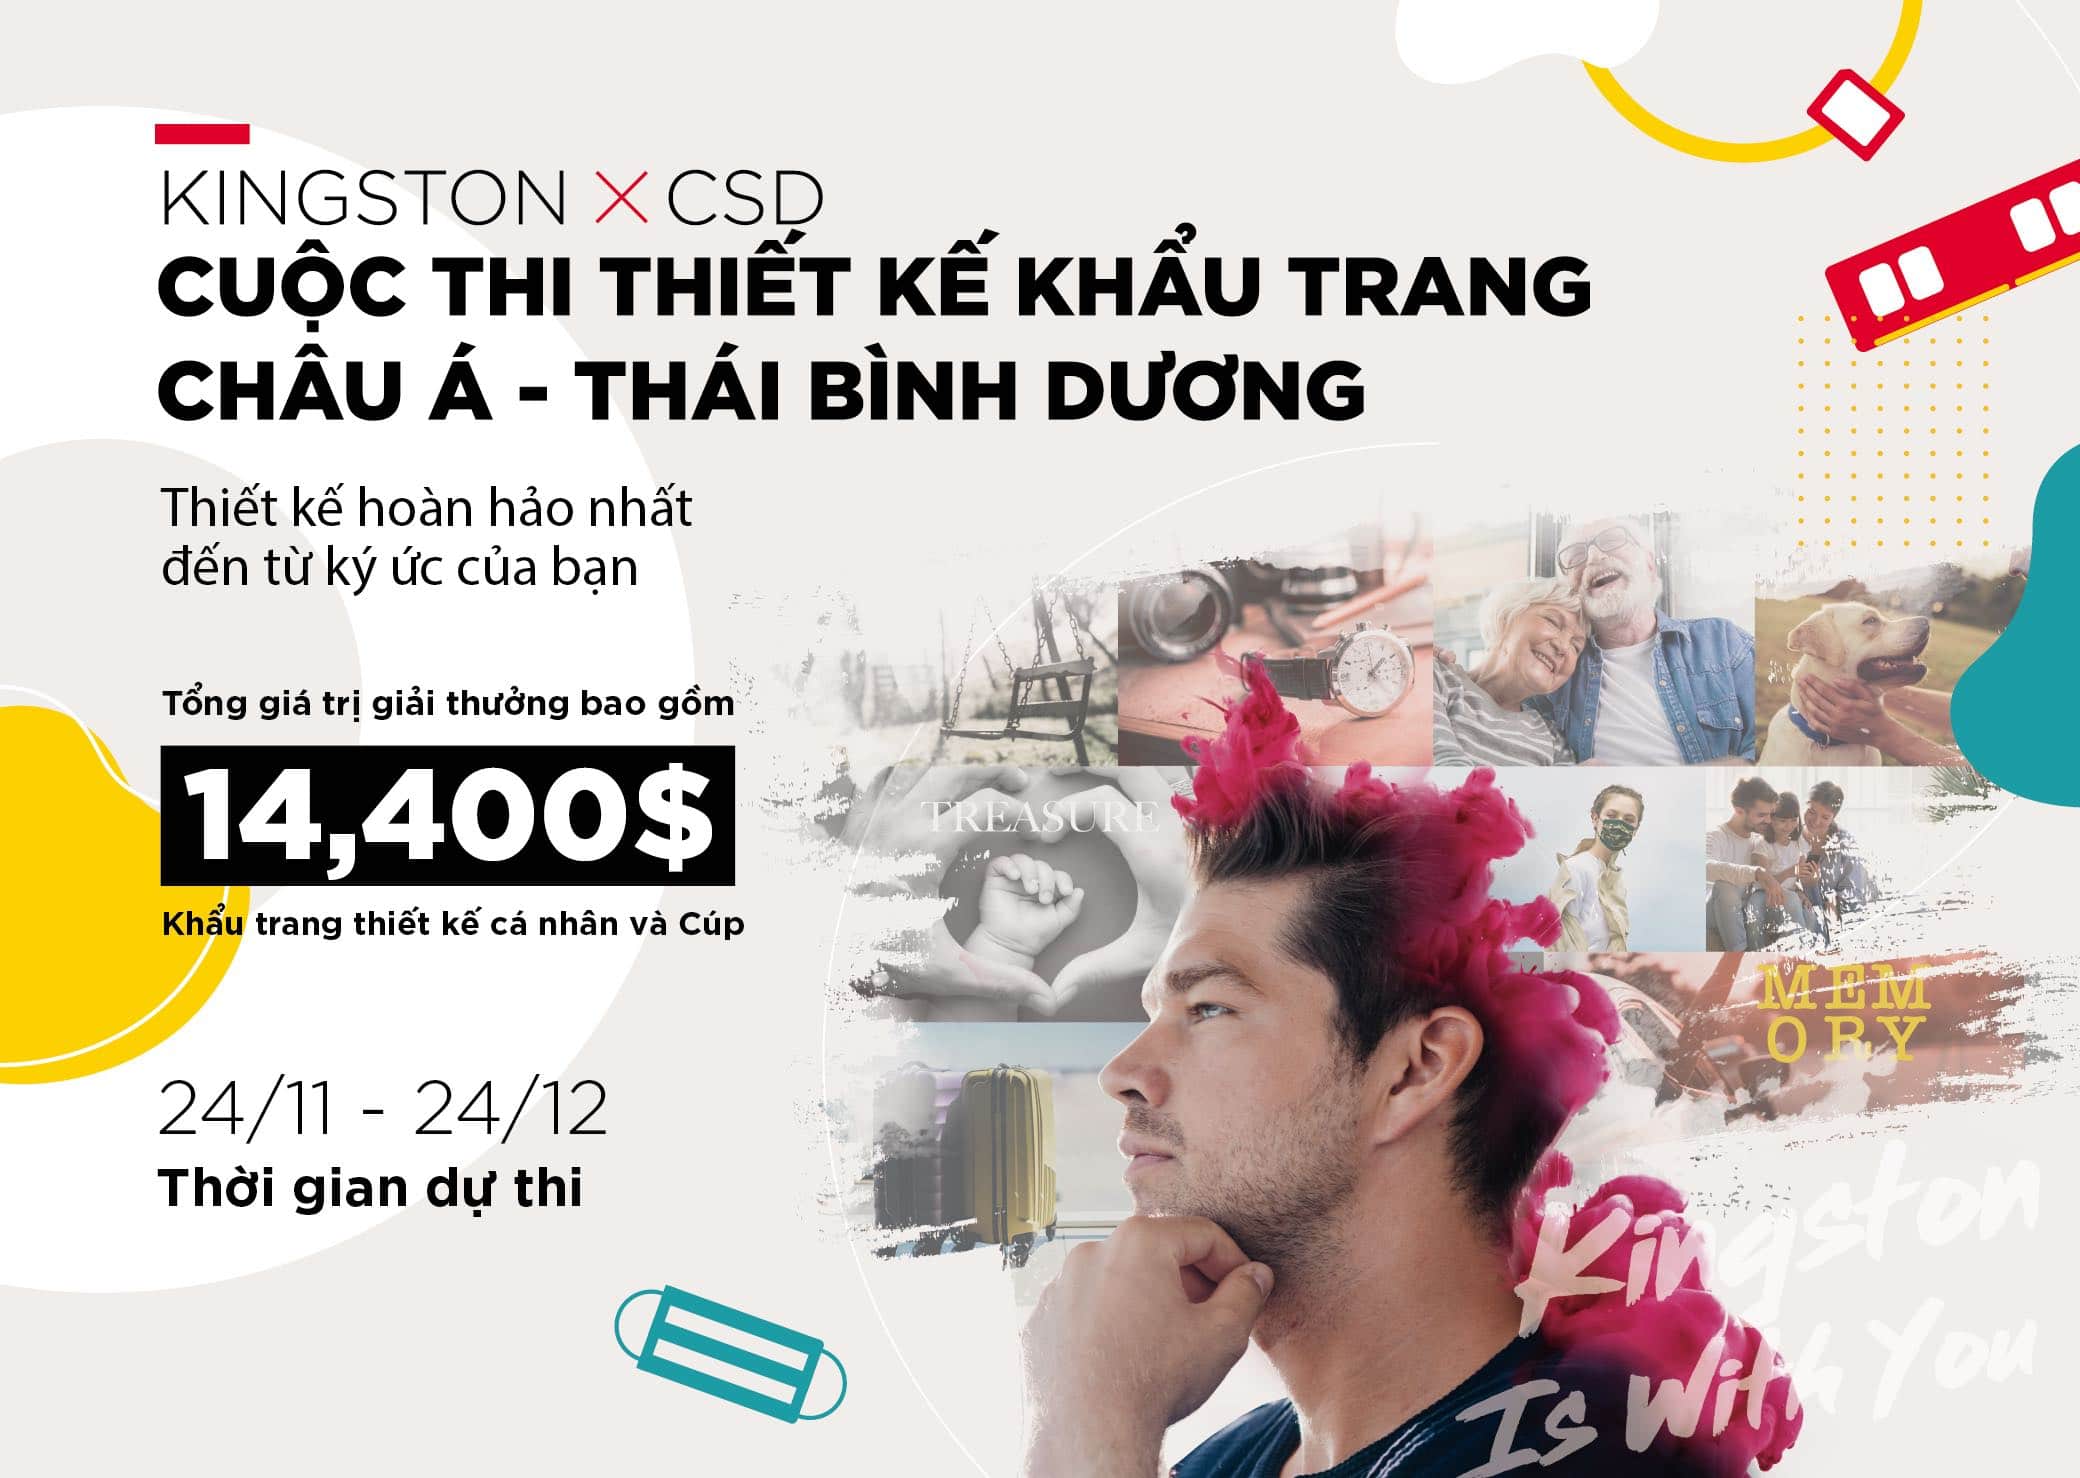 Kingston hợp tác với CSD tổ chức Cuộc Thi Thiết Kế Khẩu Trang với chủ đề “Sức Mạnh Ký Ức”, giải thưởng lên tới 14,400 USD